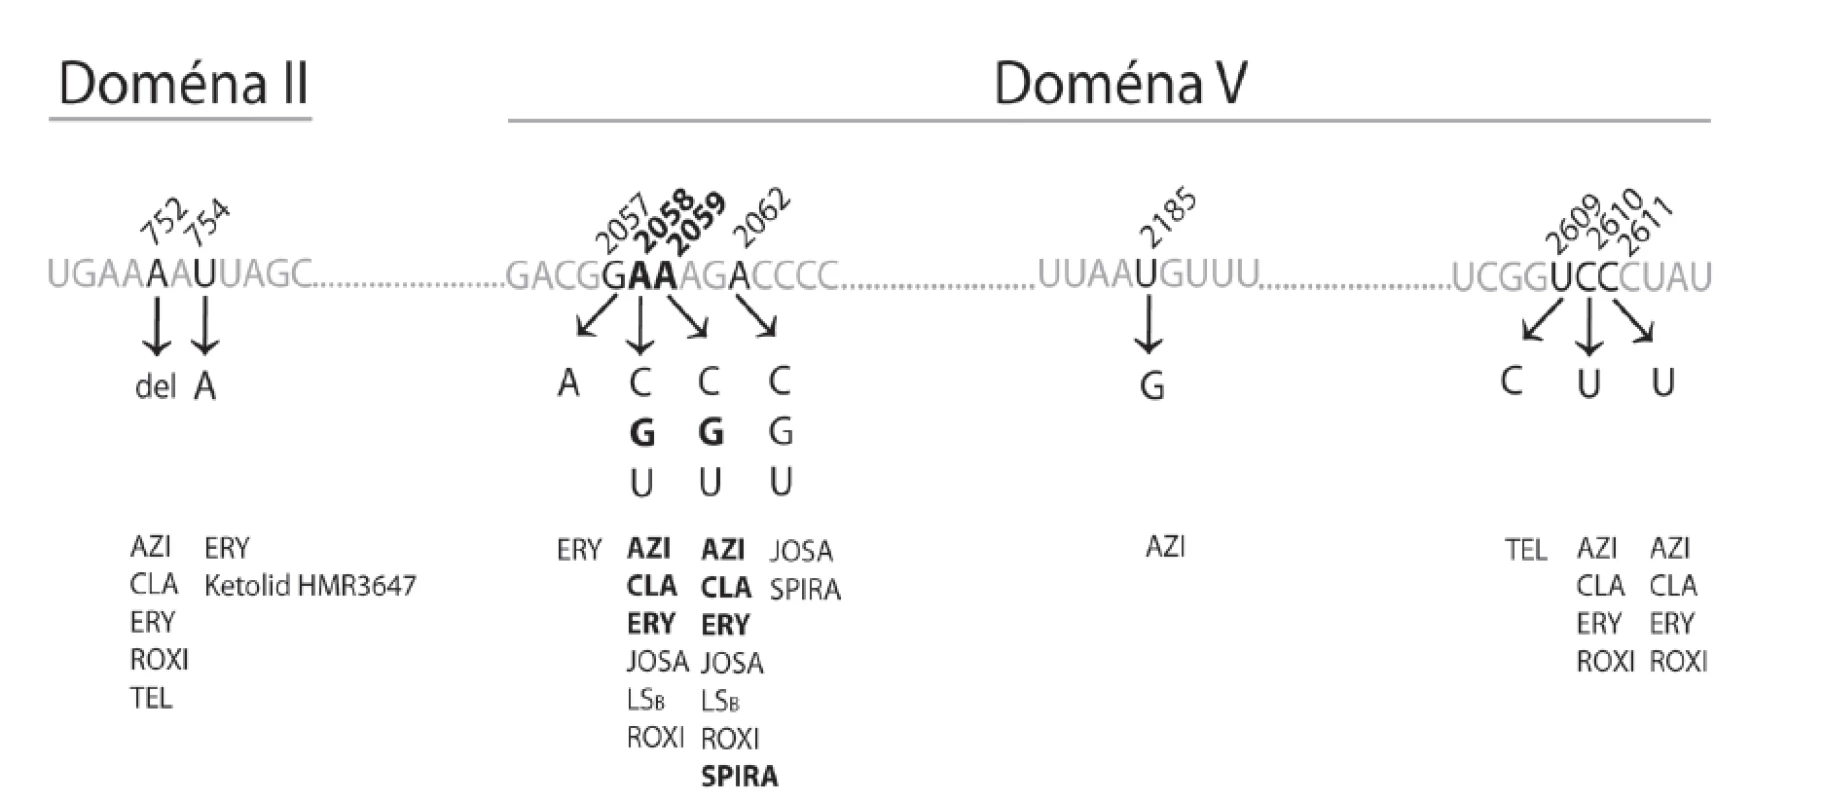 Mutace vlásenky 35 domény II (mezi koordinátami 737-760) a centrální smyčky domény V (mezi koordinátami 2000-2624) molekuly 23S rRNA vedoucí k rezistenci k různým makrolidovým antibiotikům Zobrazené mutace byly popsány u rodů &lt;em&gt;Brachyspira, Campylobacter, Escherichia, Chlamydia, Lactobacillus, Mycobacterium, Mycoplasma, Neisseria, Propionibacterium, Pseudomonas,  Staphylococcus, Streptococcus, Streptomyces, Treponema a Turicella&lt;/em&gt;.
Zvýrazněné údaje se týkají TPA. Koordináty jsou uvedeny podle pozice ve 23S rRNA &lt;em&gt;E. coli&lt;/em&gt;. 
AZI – azitromycin; CLA – klaritromycin; ERY – erytromycin; JOSA – josamycin; LSB – linkosamidy a streptogramin B; ROXI – roxitromycin; SPIRA – spiramycin; TEL – telitromycin&lt;br&gt; 
Fig. 2. Mutations in hairpin 35 of domain II (coordinates 737-760) and the central loop of domain V (coordinates 2000-2624) of the 23S rRNA molecule conferring resistance to different macrolides Such mutations have been reported in the genera &lt;em&gt;Brachyspira, Campylobacter, Escherichia, Chlamydia, Lactobacillus, Mycobacterium, Mycoplasma, Neisseria, Propionibacterium, Pseudomonas, Staphylococcus, Streptococcus, Streptomyces, Treponema a Turicella&lt;/em&gt;. 
The data highlighted are related to Treponema pallidum subsp. pallidum (TPA). Coordinates are given in accordance with the positions in 23S rRNA of &lt;em&gt;E. coli&lt;/em&gt;.
AZI – azithromycin; CLA – clarithromycin; ERY – erythromycin; JOSA – josamycin; LSB – lincosamides and streptogramin B; ROXI – roxithromycin; SPIRA – spiramycin; TEL – telithromycin